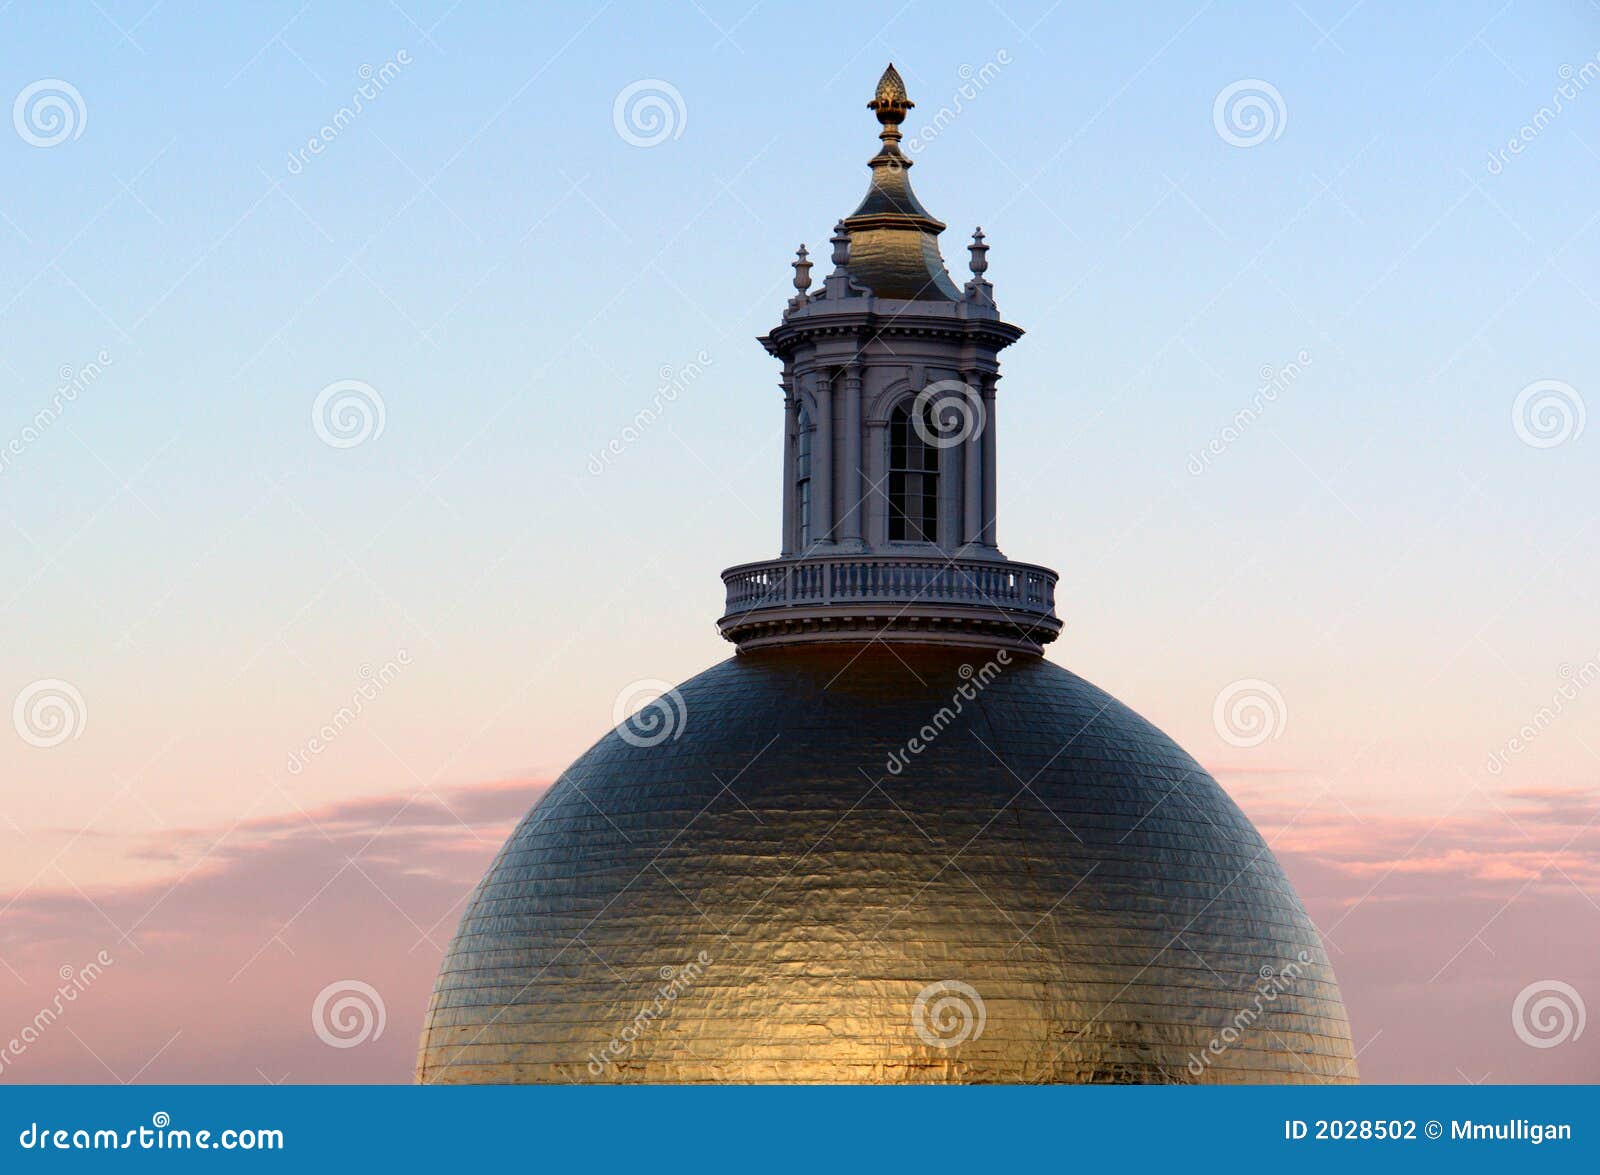 massachusetts statehouse dome